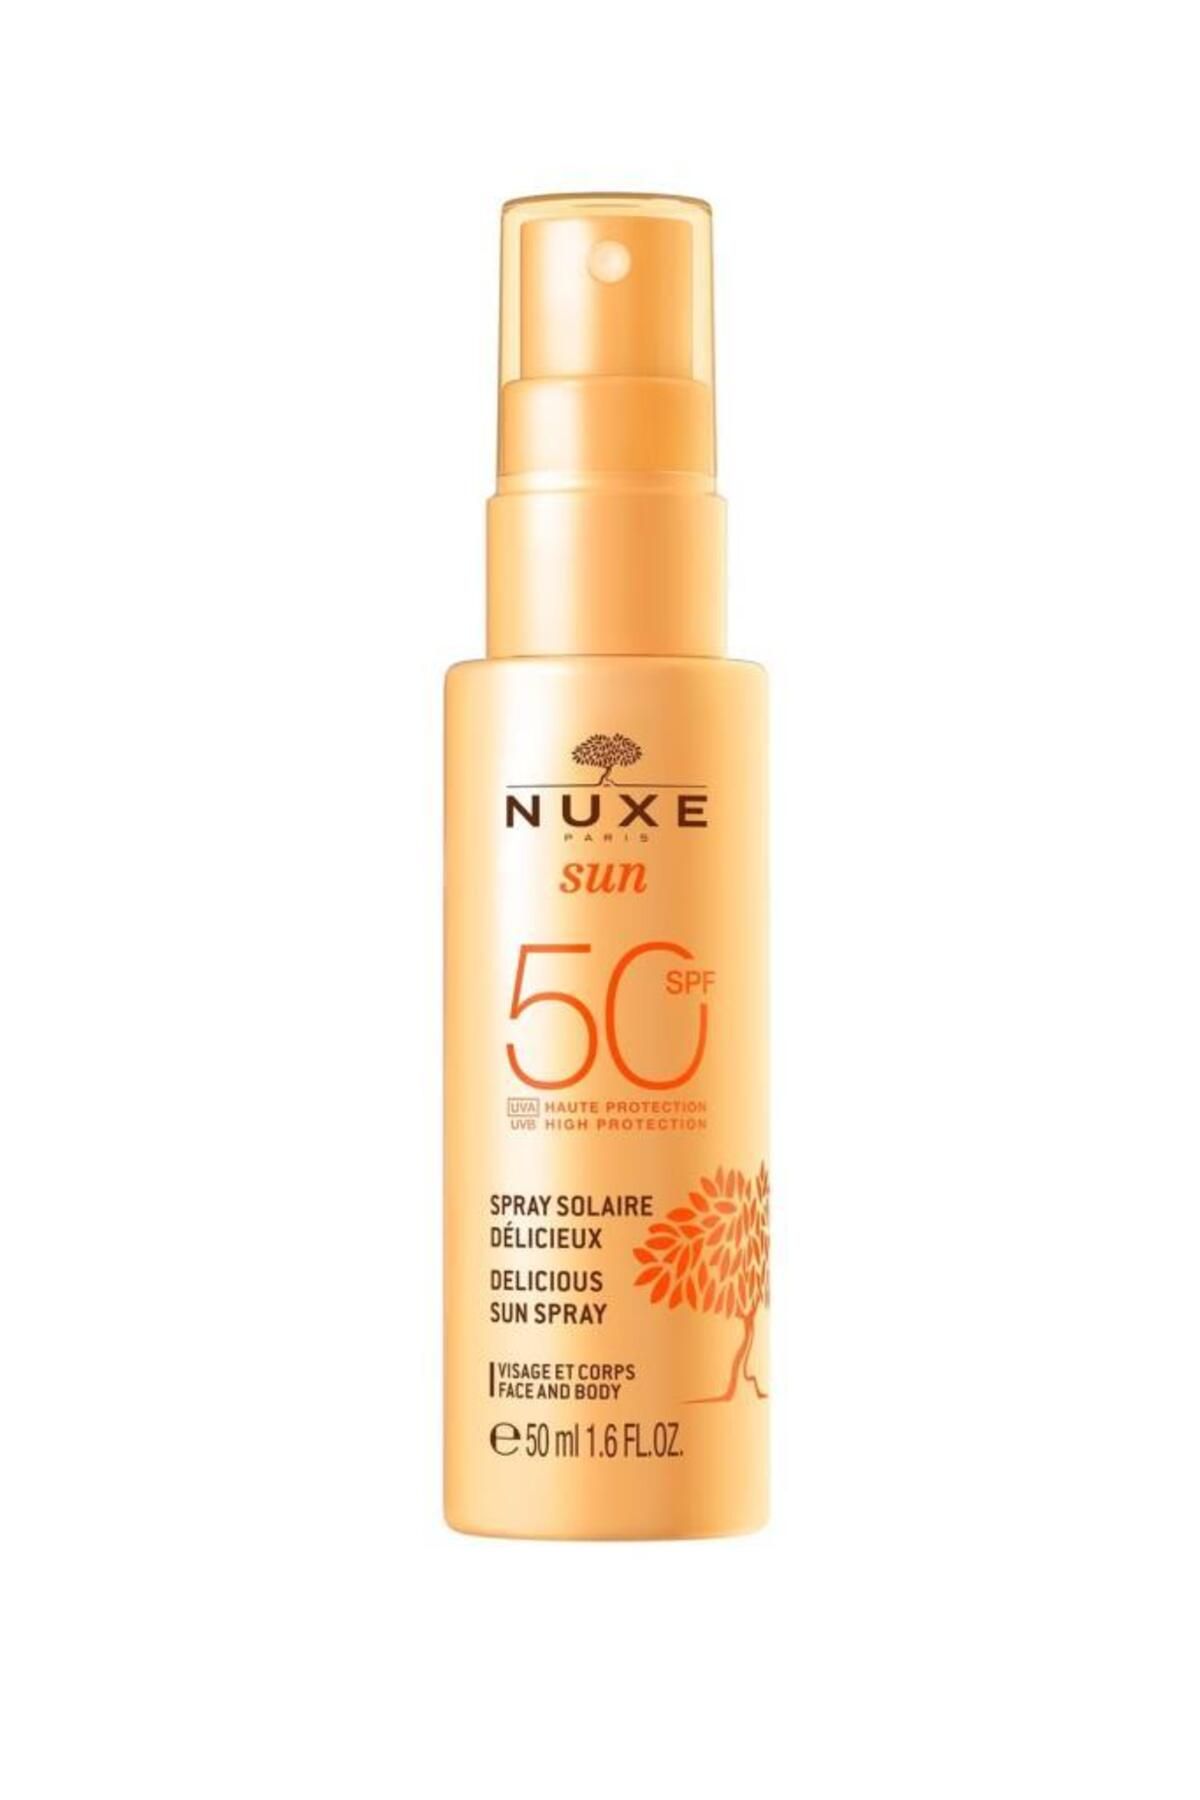 Nuxe Sun Spf50 Delicious Sun Spray 50 ml